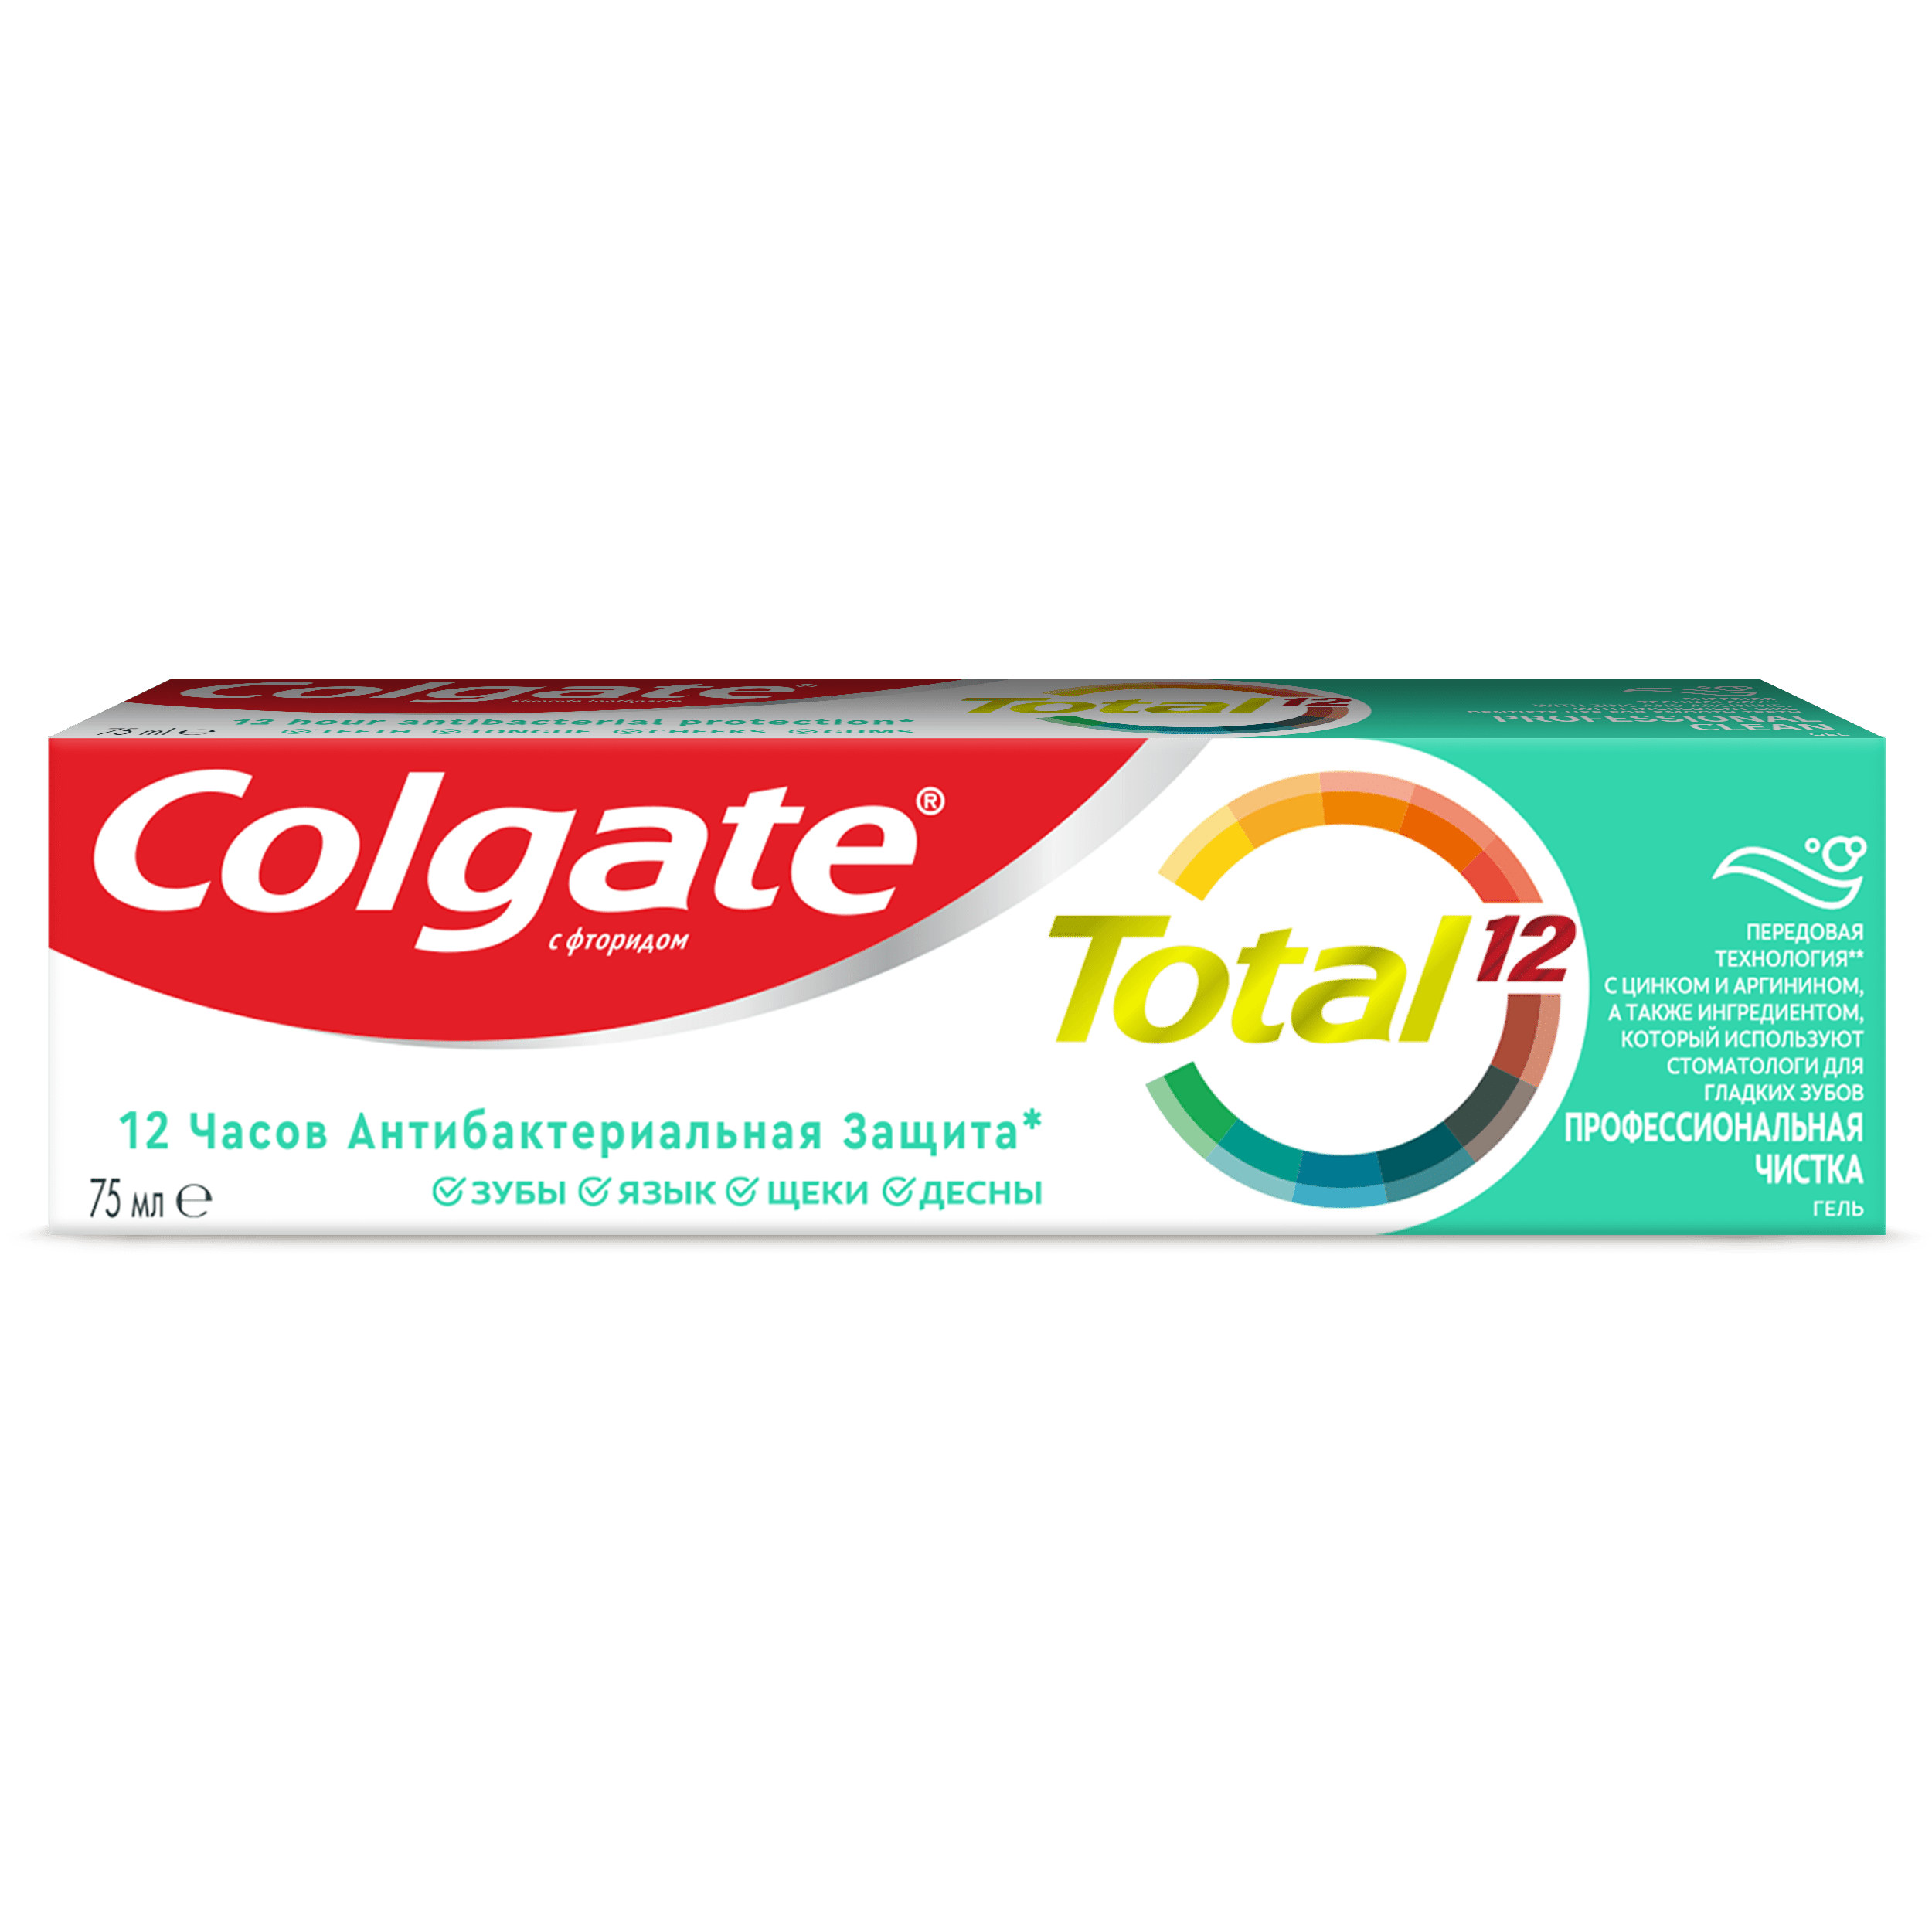 Комплексная зубная паста Colgate Total 12 Профессиональная чистка гель Борется с бактериями 75 мл